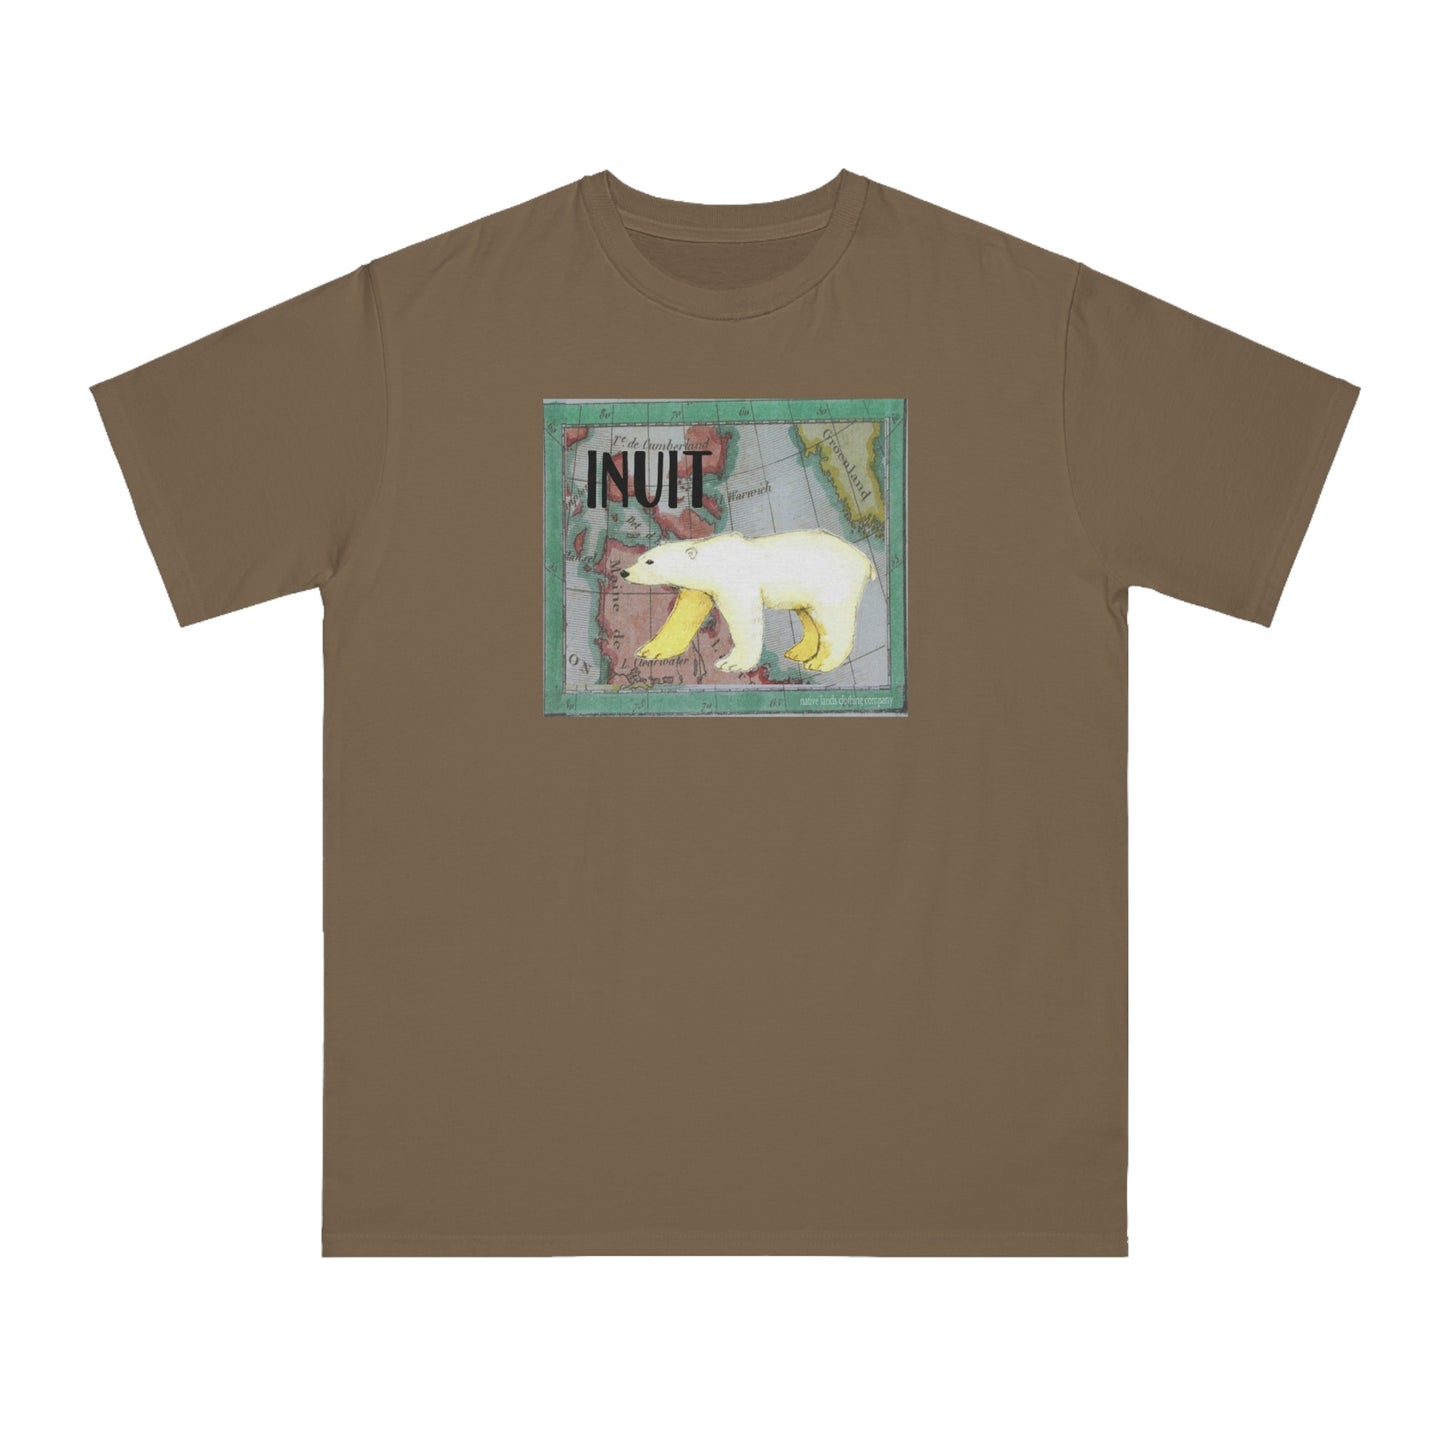 Bio-Inuit-Stamm-Shirt, Eisbär-Baumwolle, Indianer